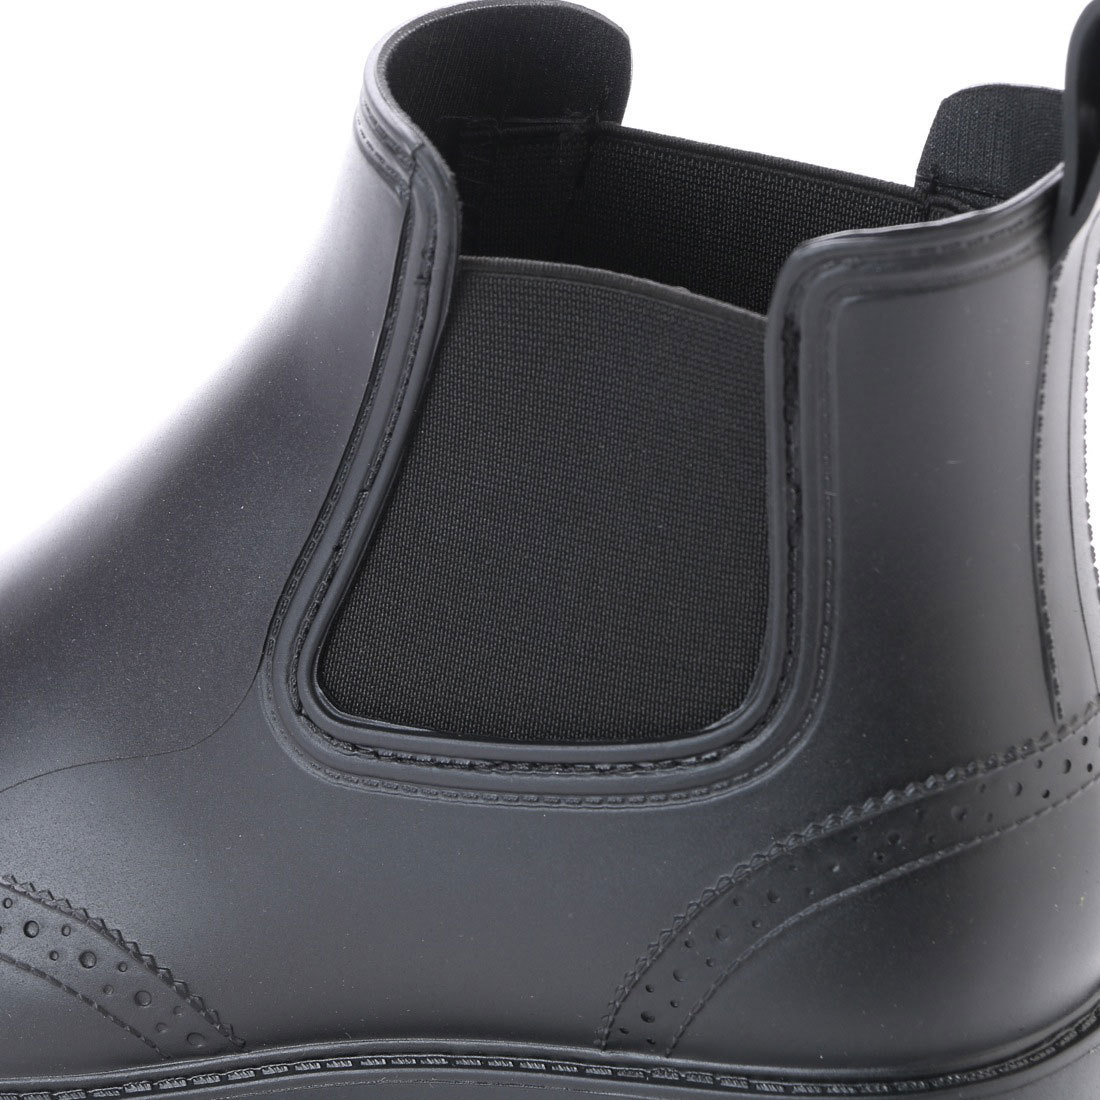  men's rain boots side-gore boots new goods [16033-BLK-L]26.0cm~26.5cm Short rain shoes short boots 